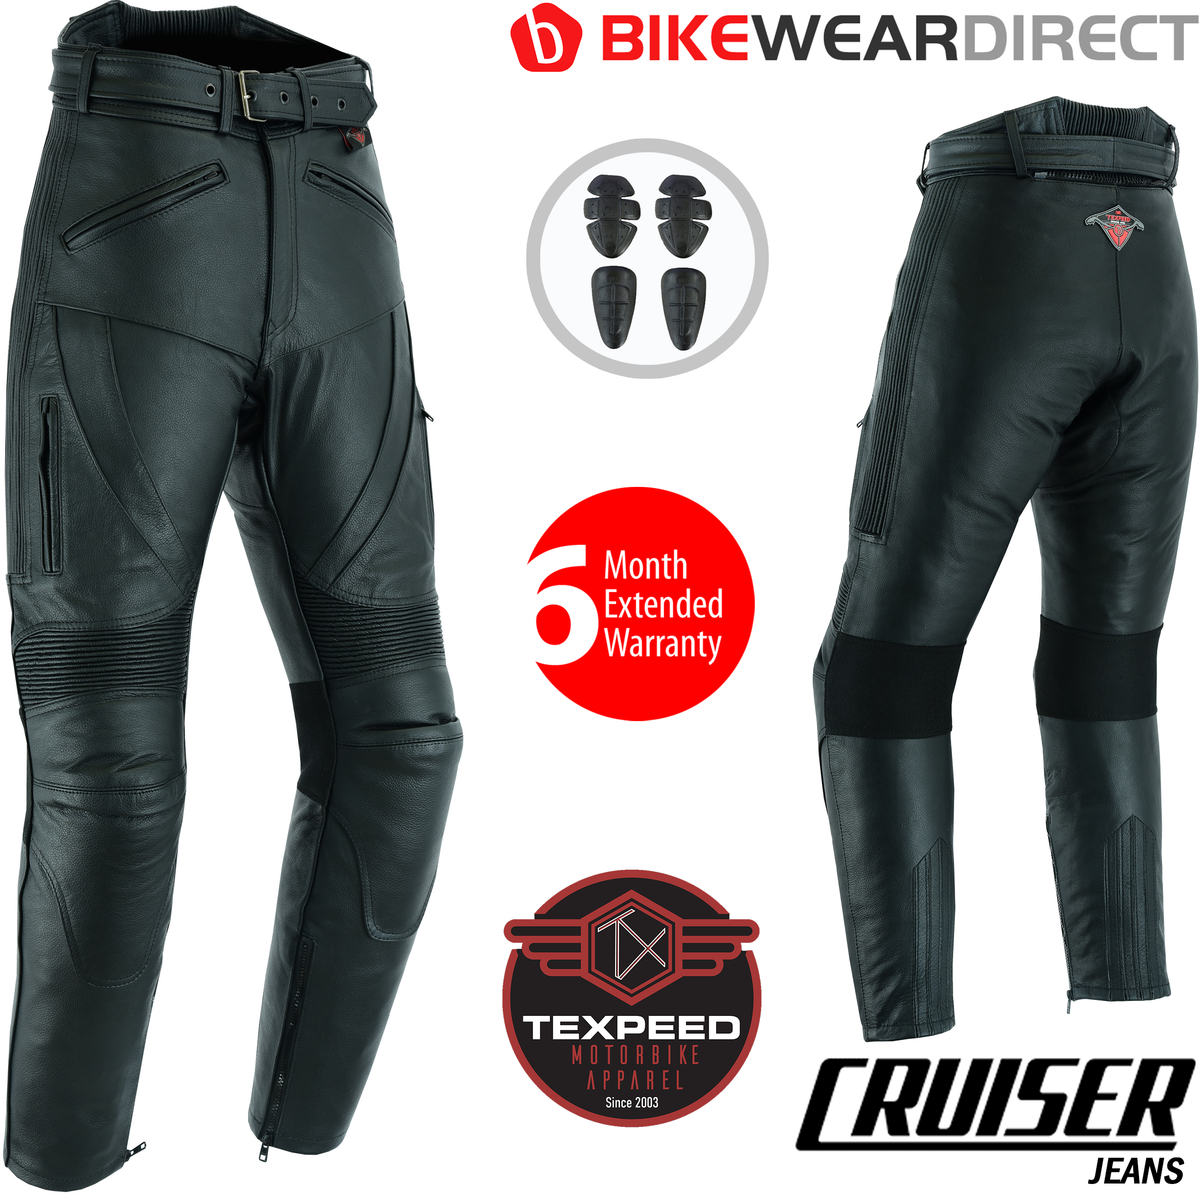 Pantalon moto cuir homme - De tourisme en cuir pour moto Cruiser racing  avec protection authentique biker CE armor (EN 1621-1) - Texpeed - Noir -  (S